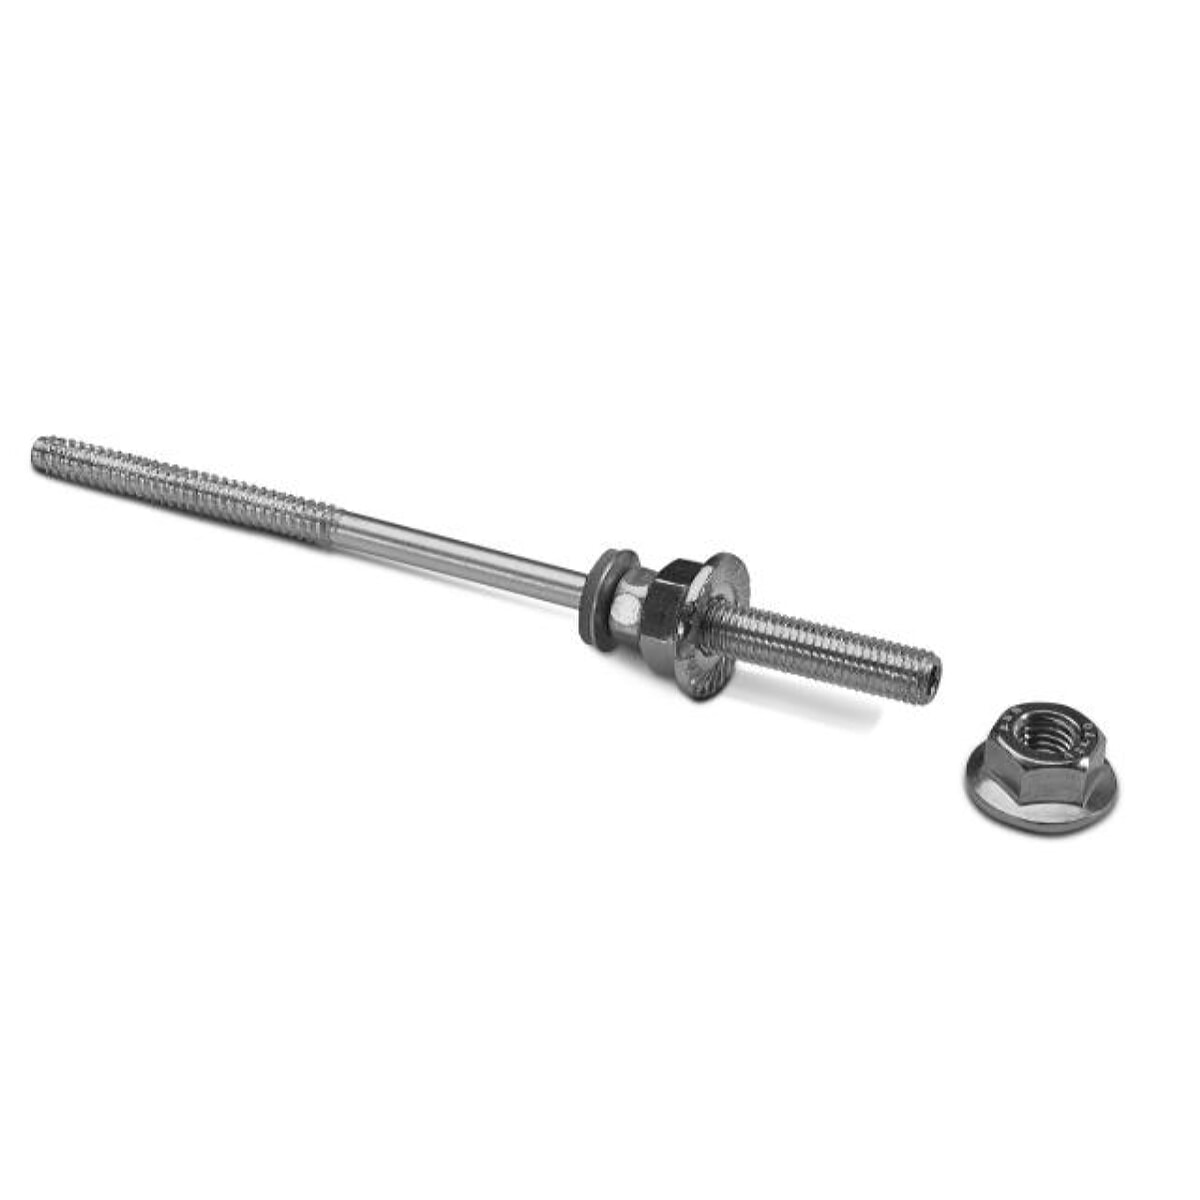 Novotegra top-fix hanger screw set SP 8.0-M10 185 mm